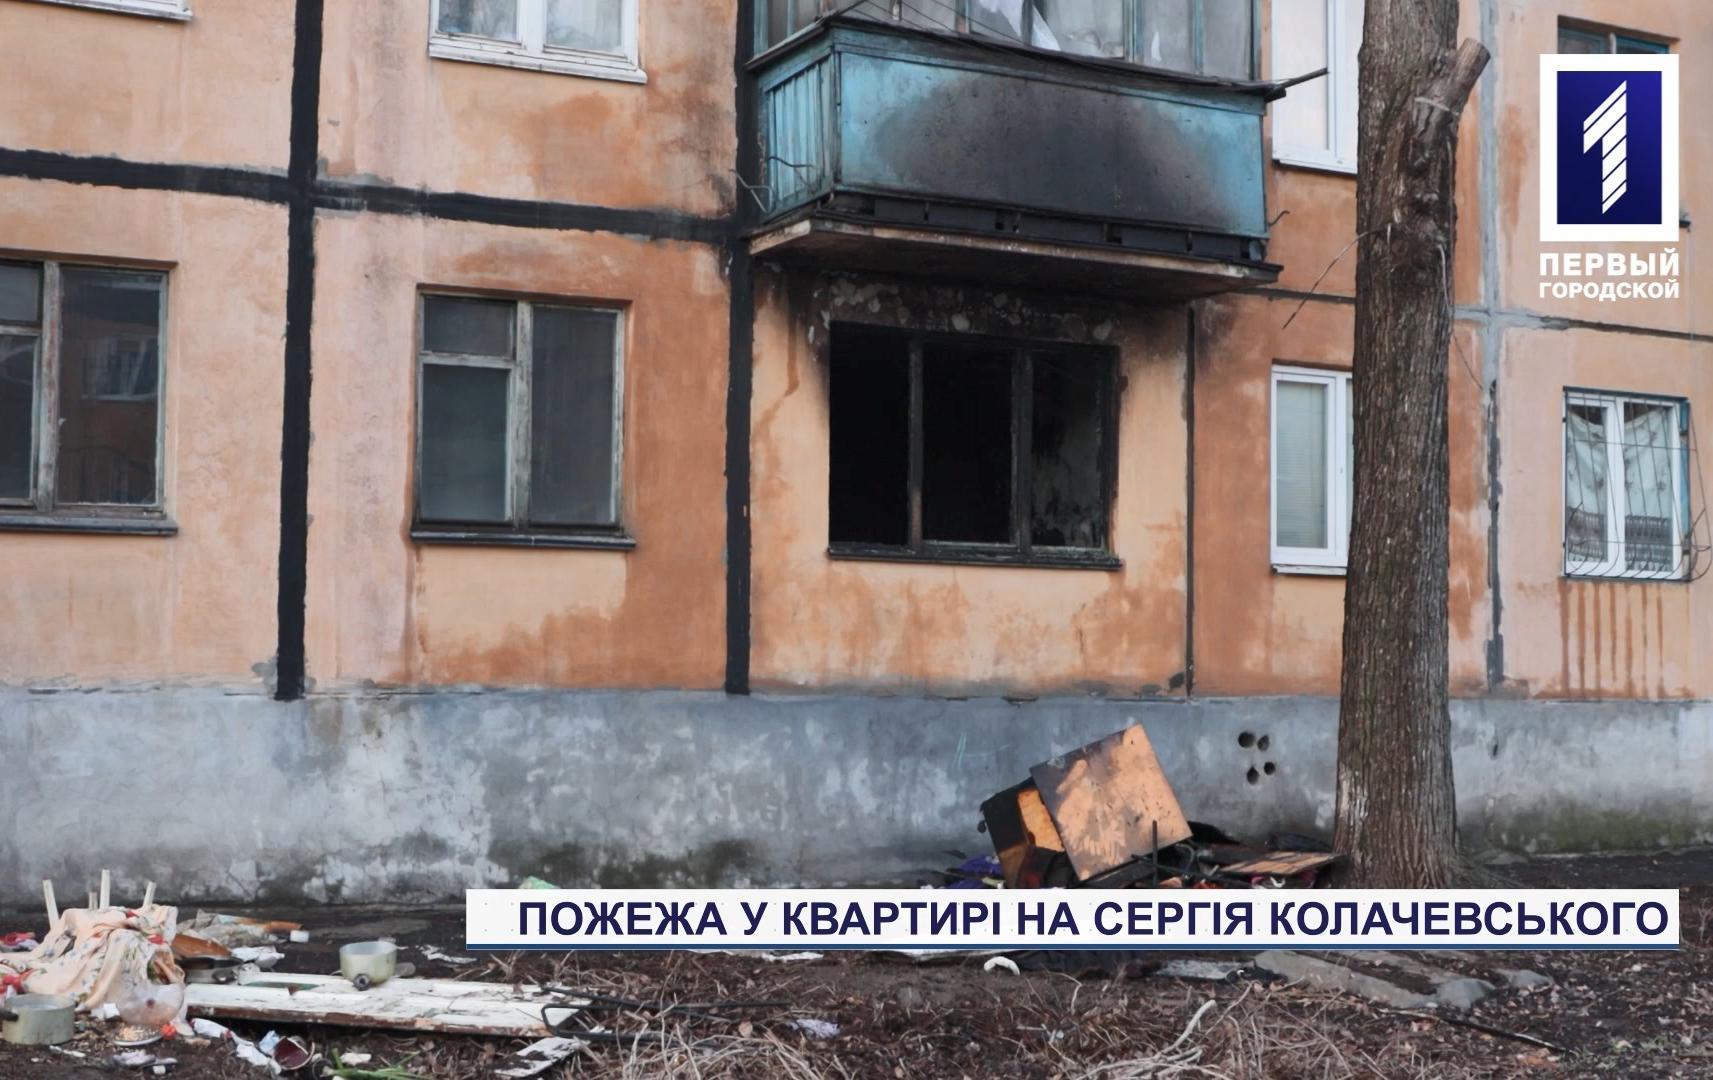 Новости Кривого Рога: выгорела квартира на улице Сергея Колачевского